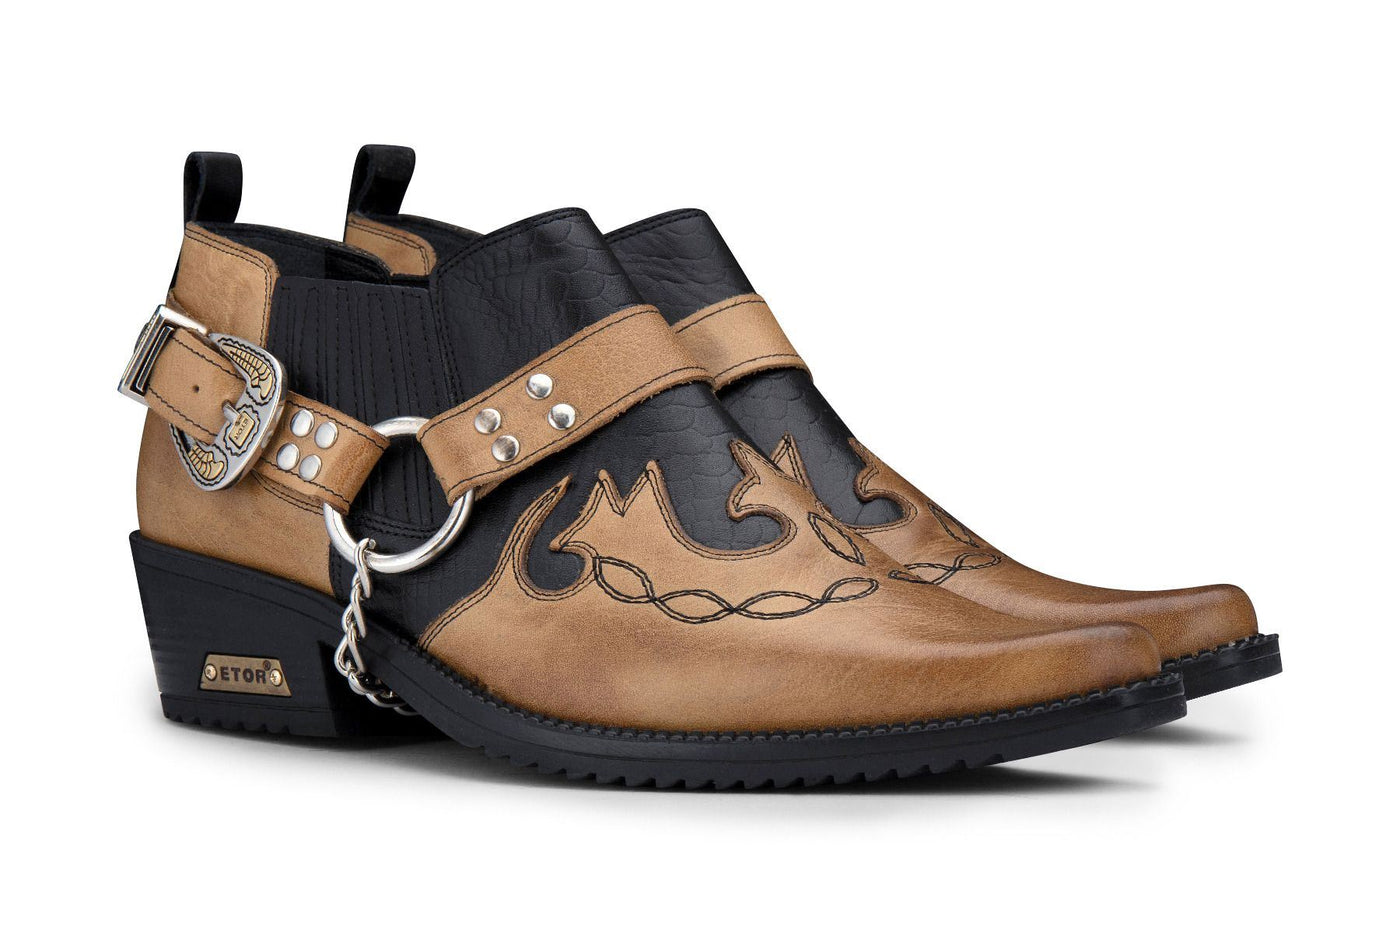 Men's Black/Tan Snakeskin Winklepicker Leather Western Shoes